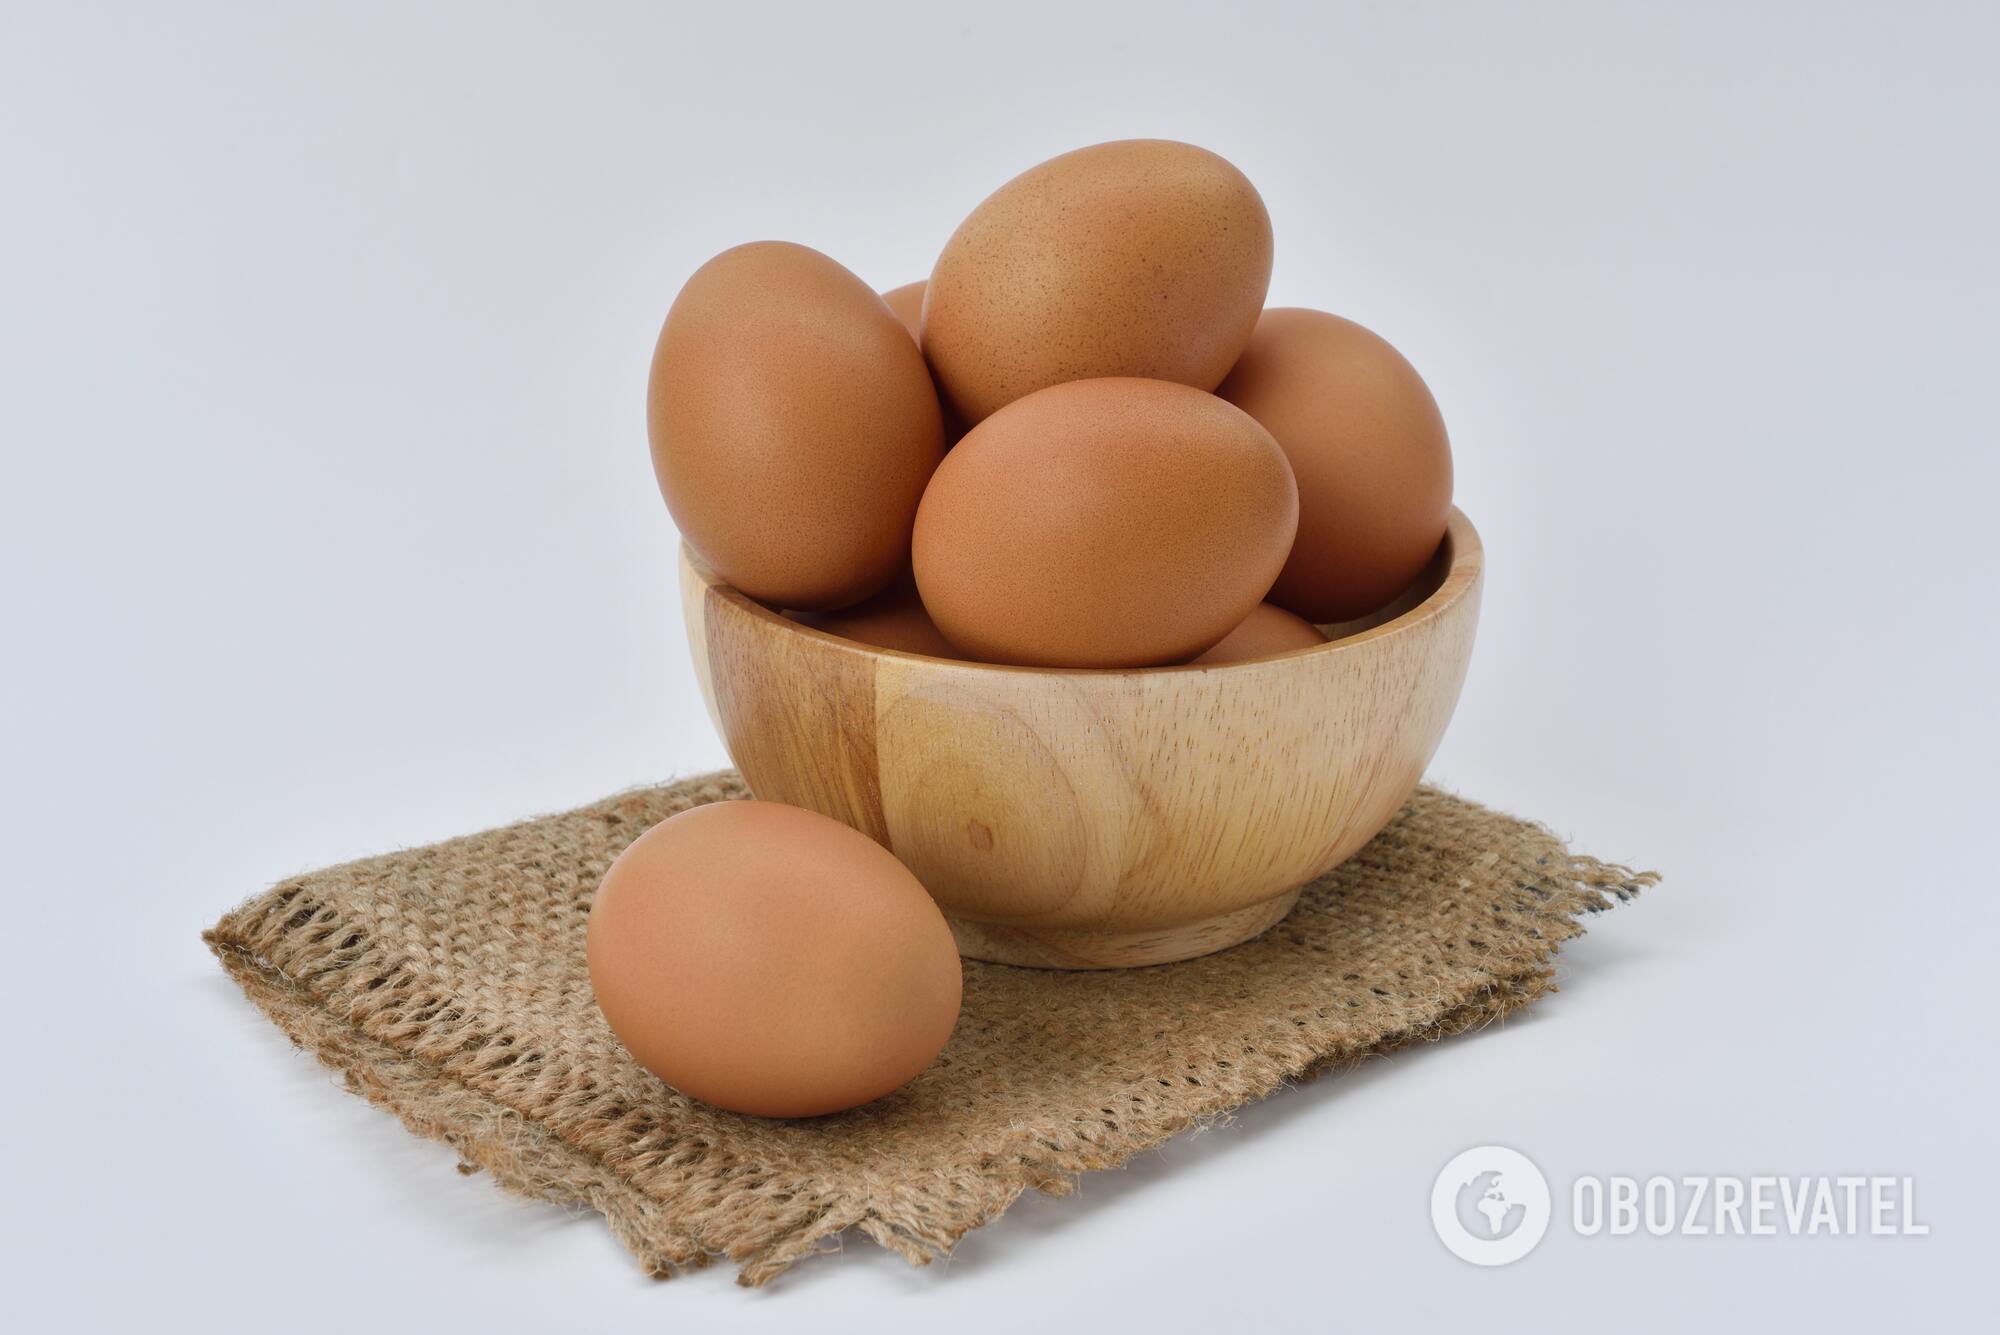 Domestic eggs